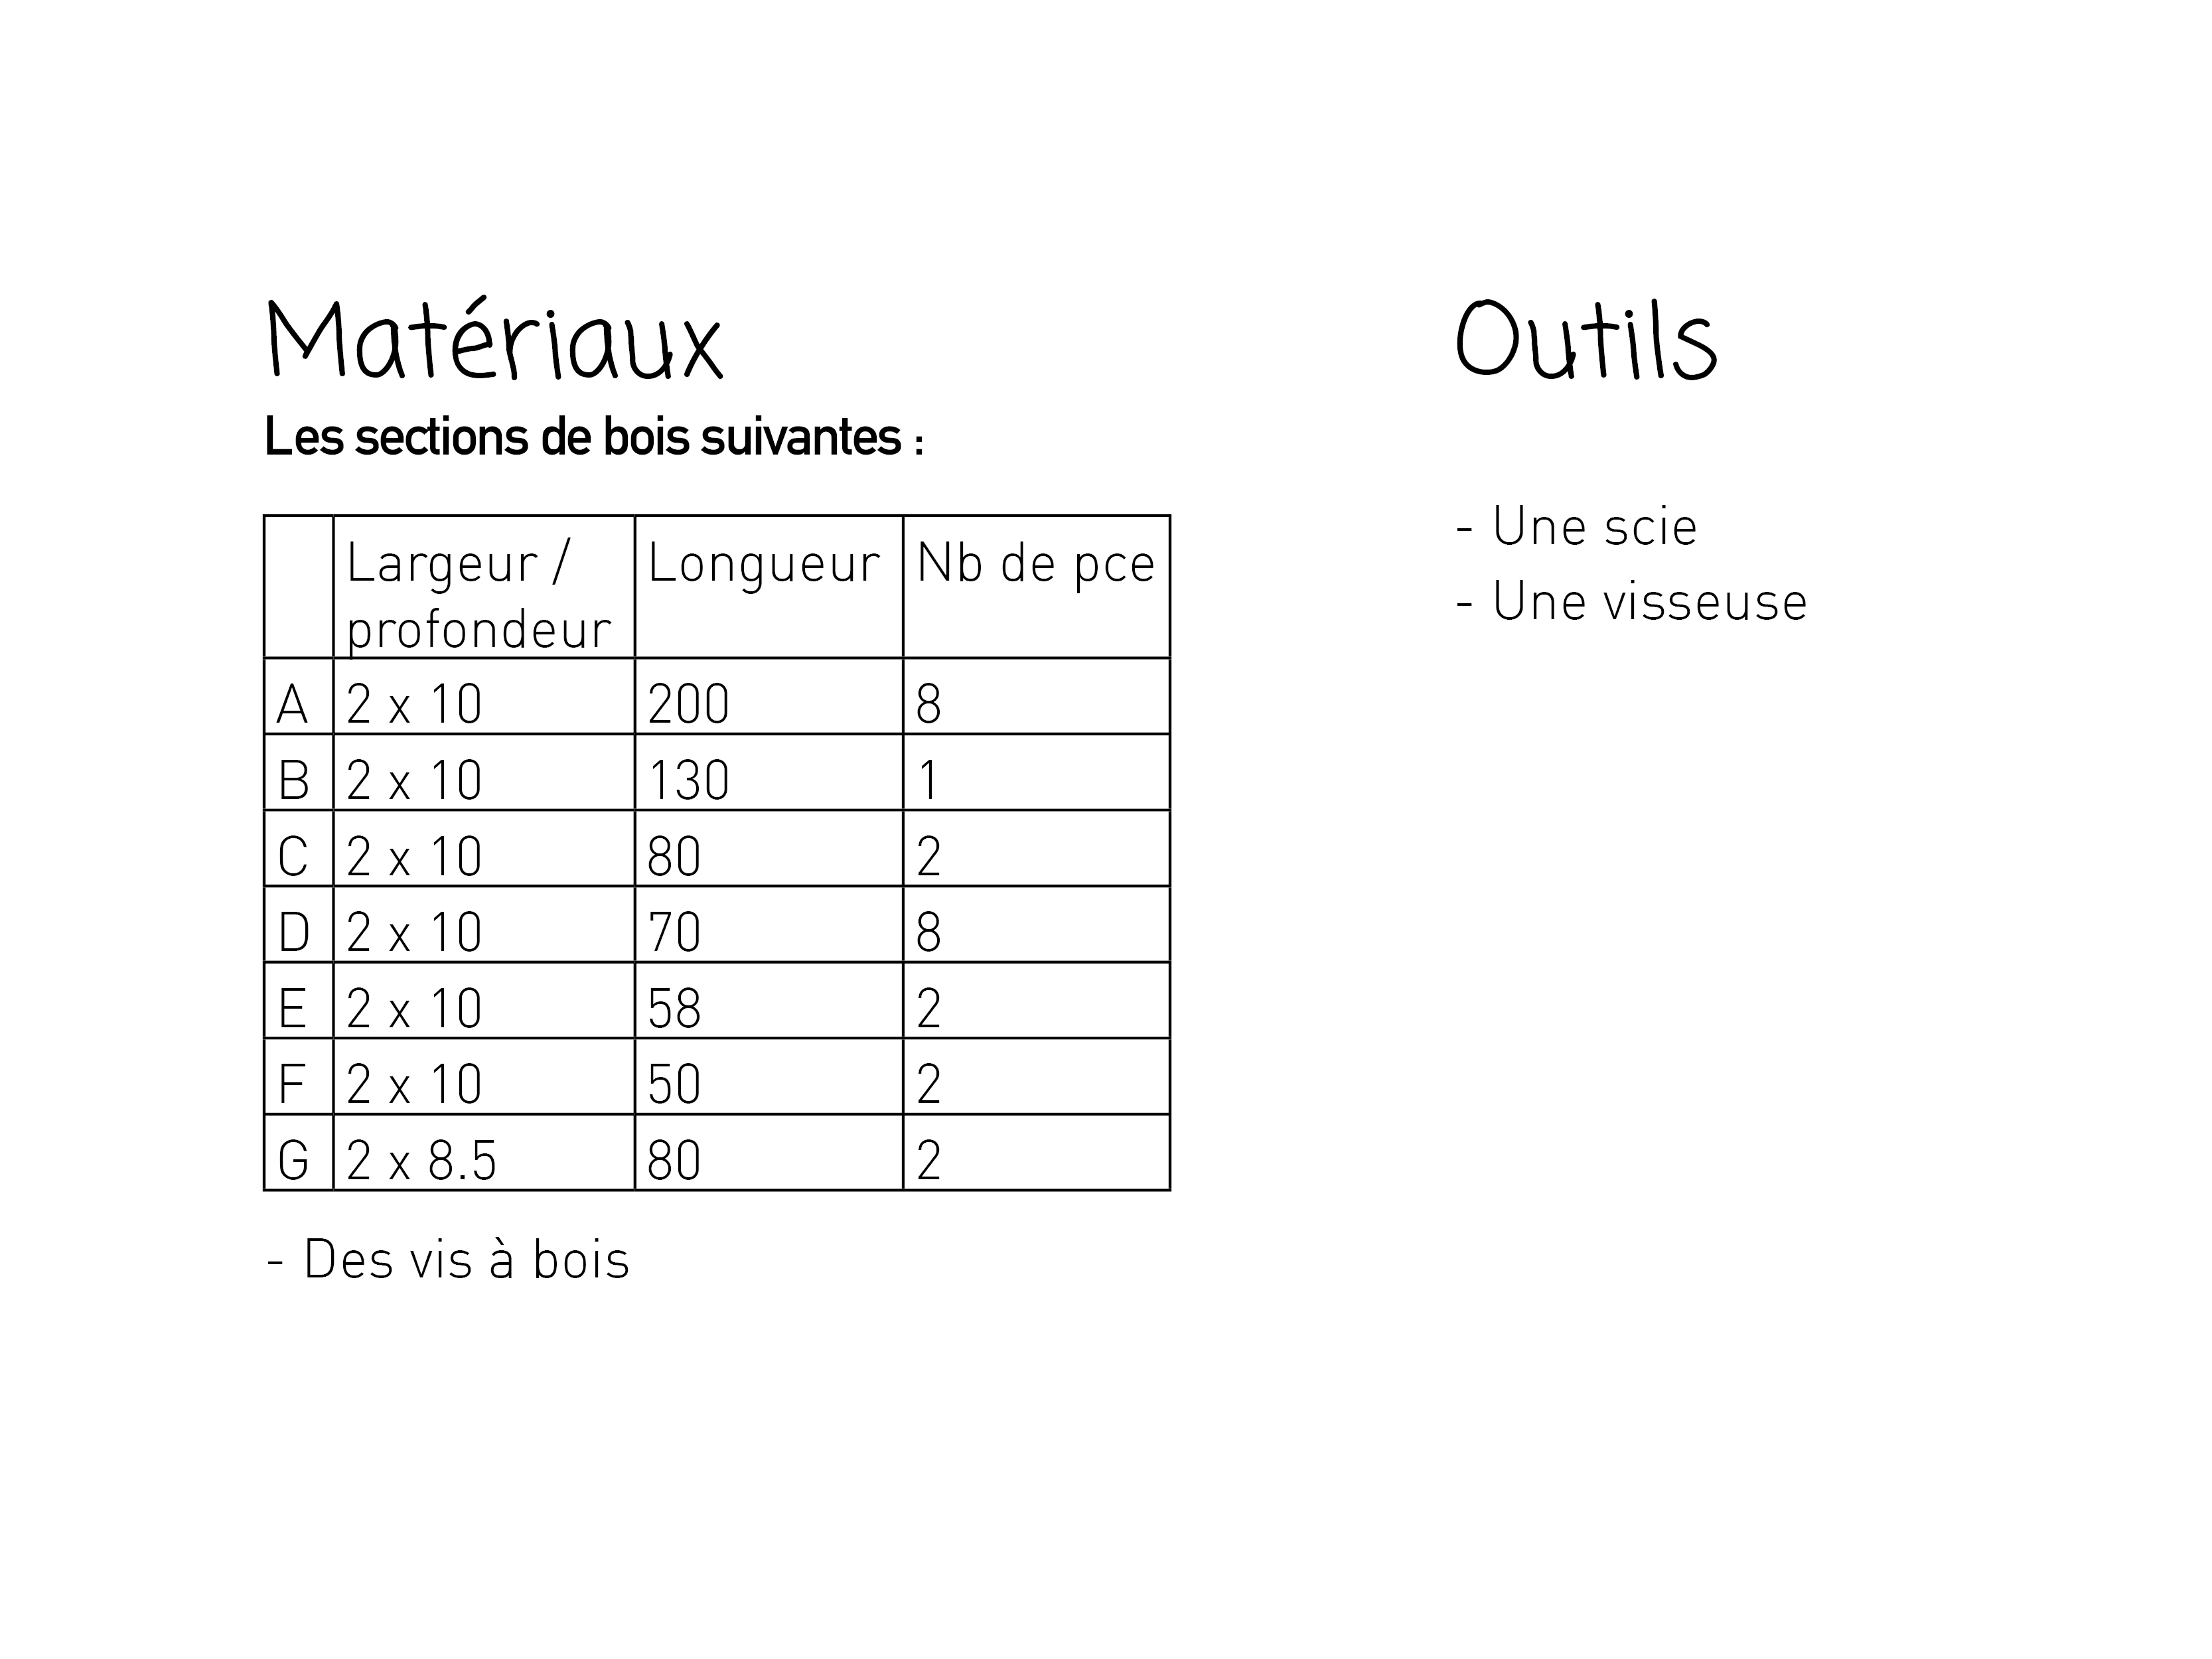 Table Enzo Mari - Poulpe x Les Saprophytes 2. Outils et Mat riaux3.jpg